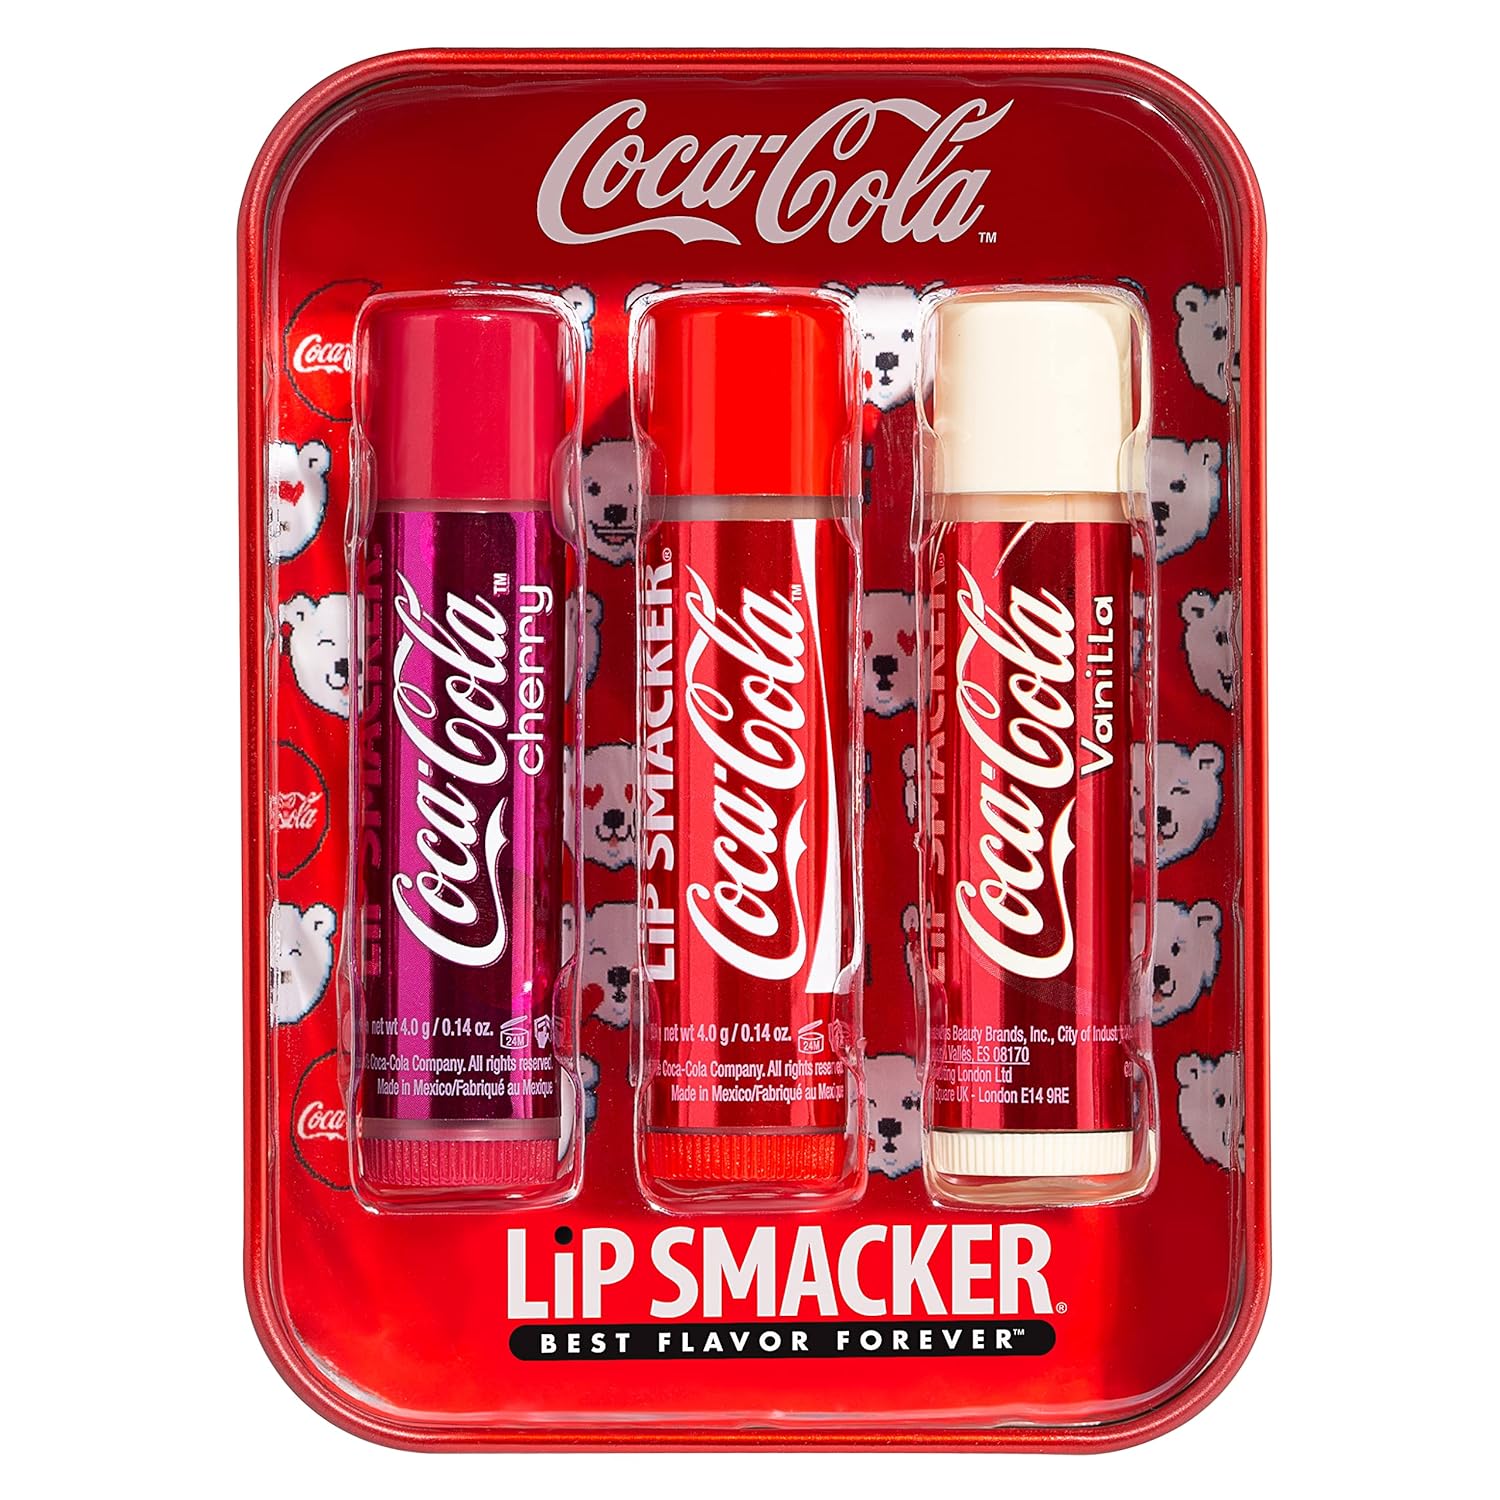 Lip Smacker Coca Cola Collection, lip balm made for kids - Cherry Coke, Coke, Vanilla Coke, trio